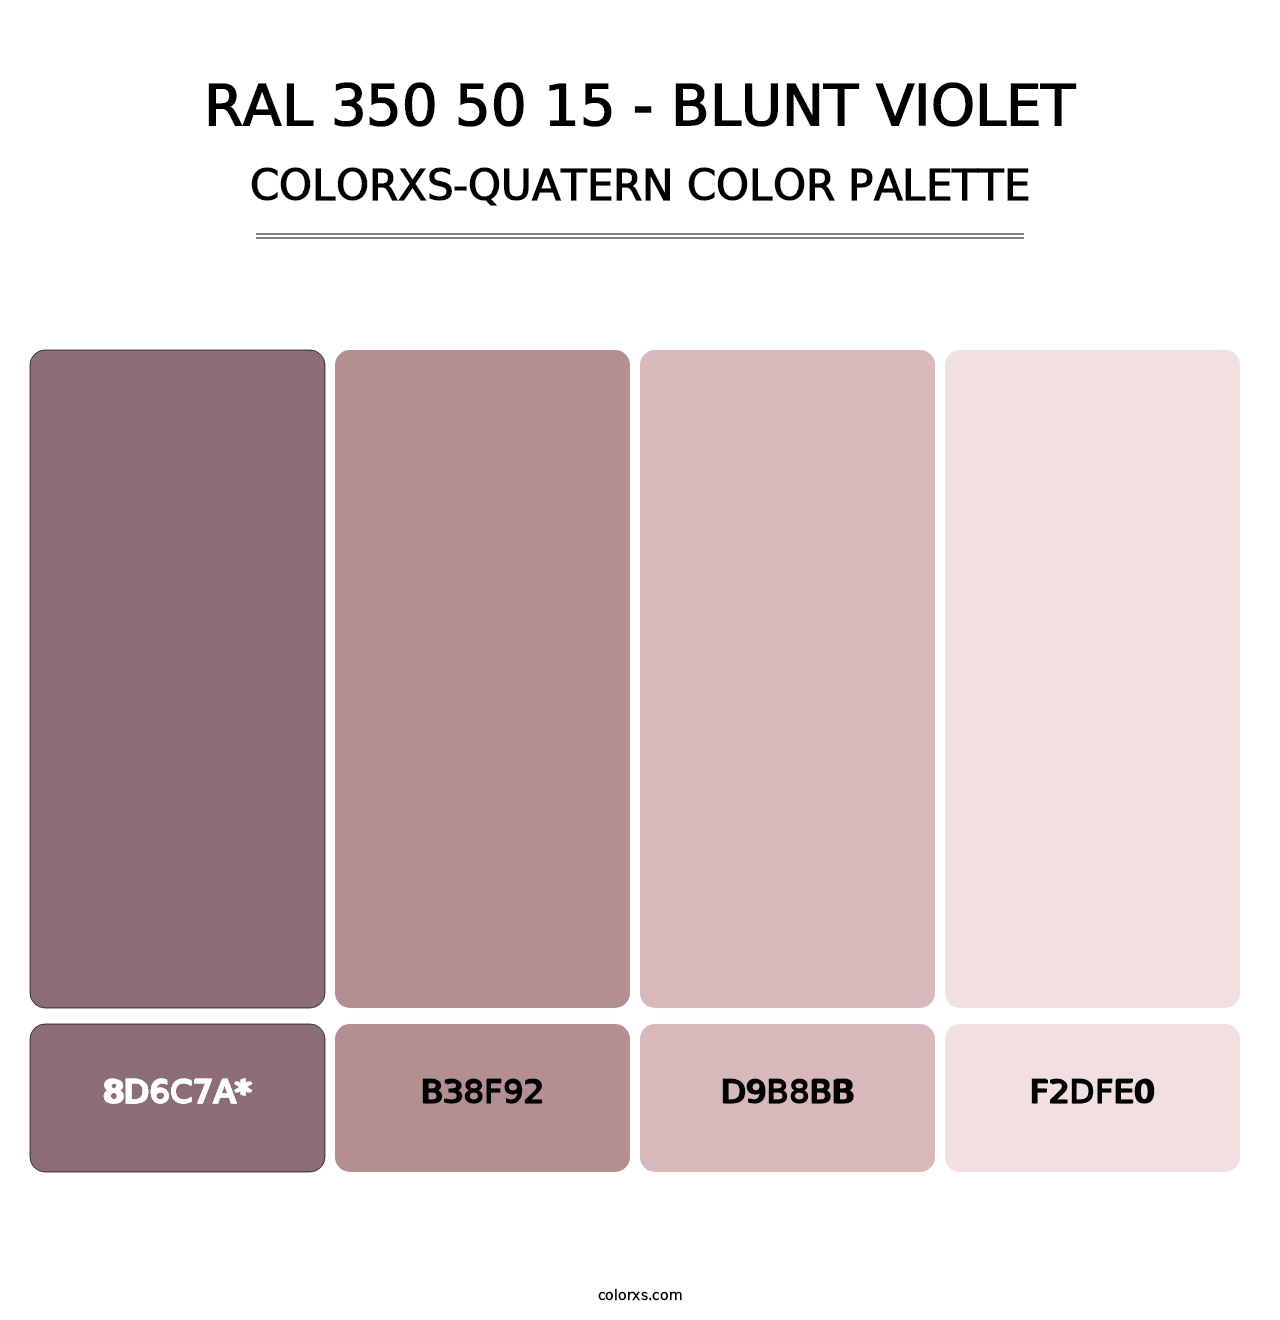 RAL 350 50 15 - Blunt Violet - Colorxs Quatern Palette